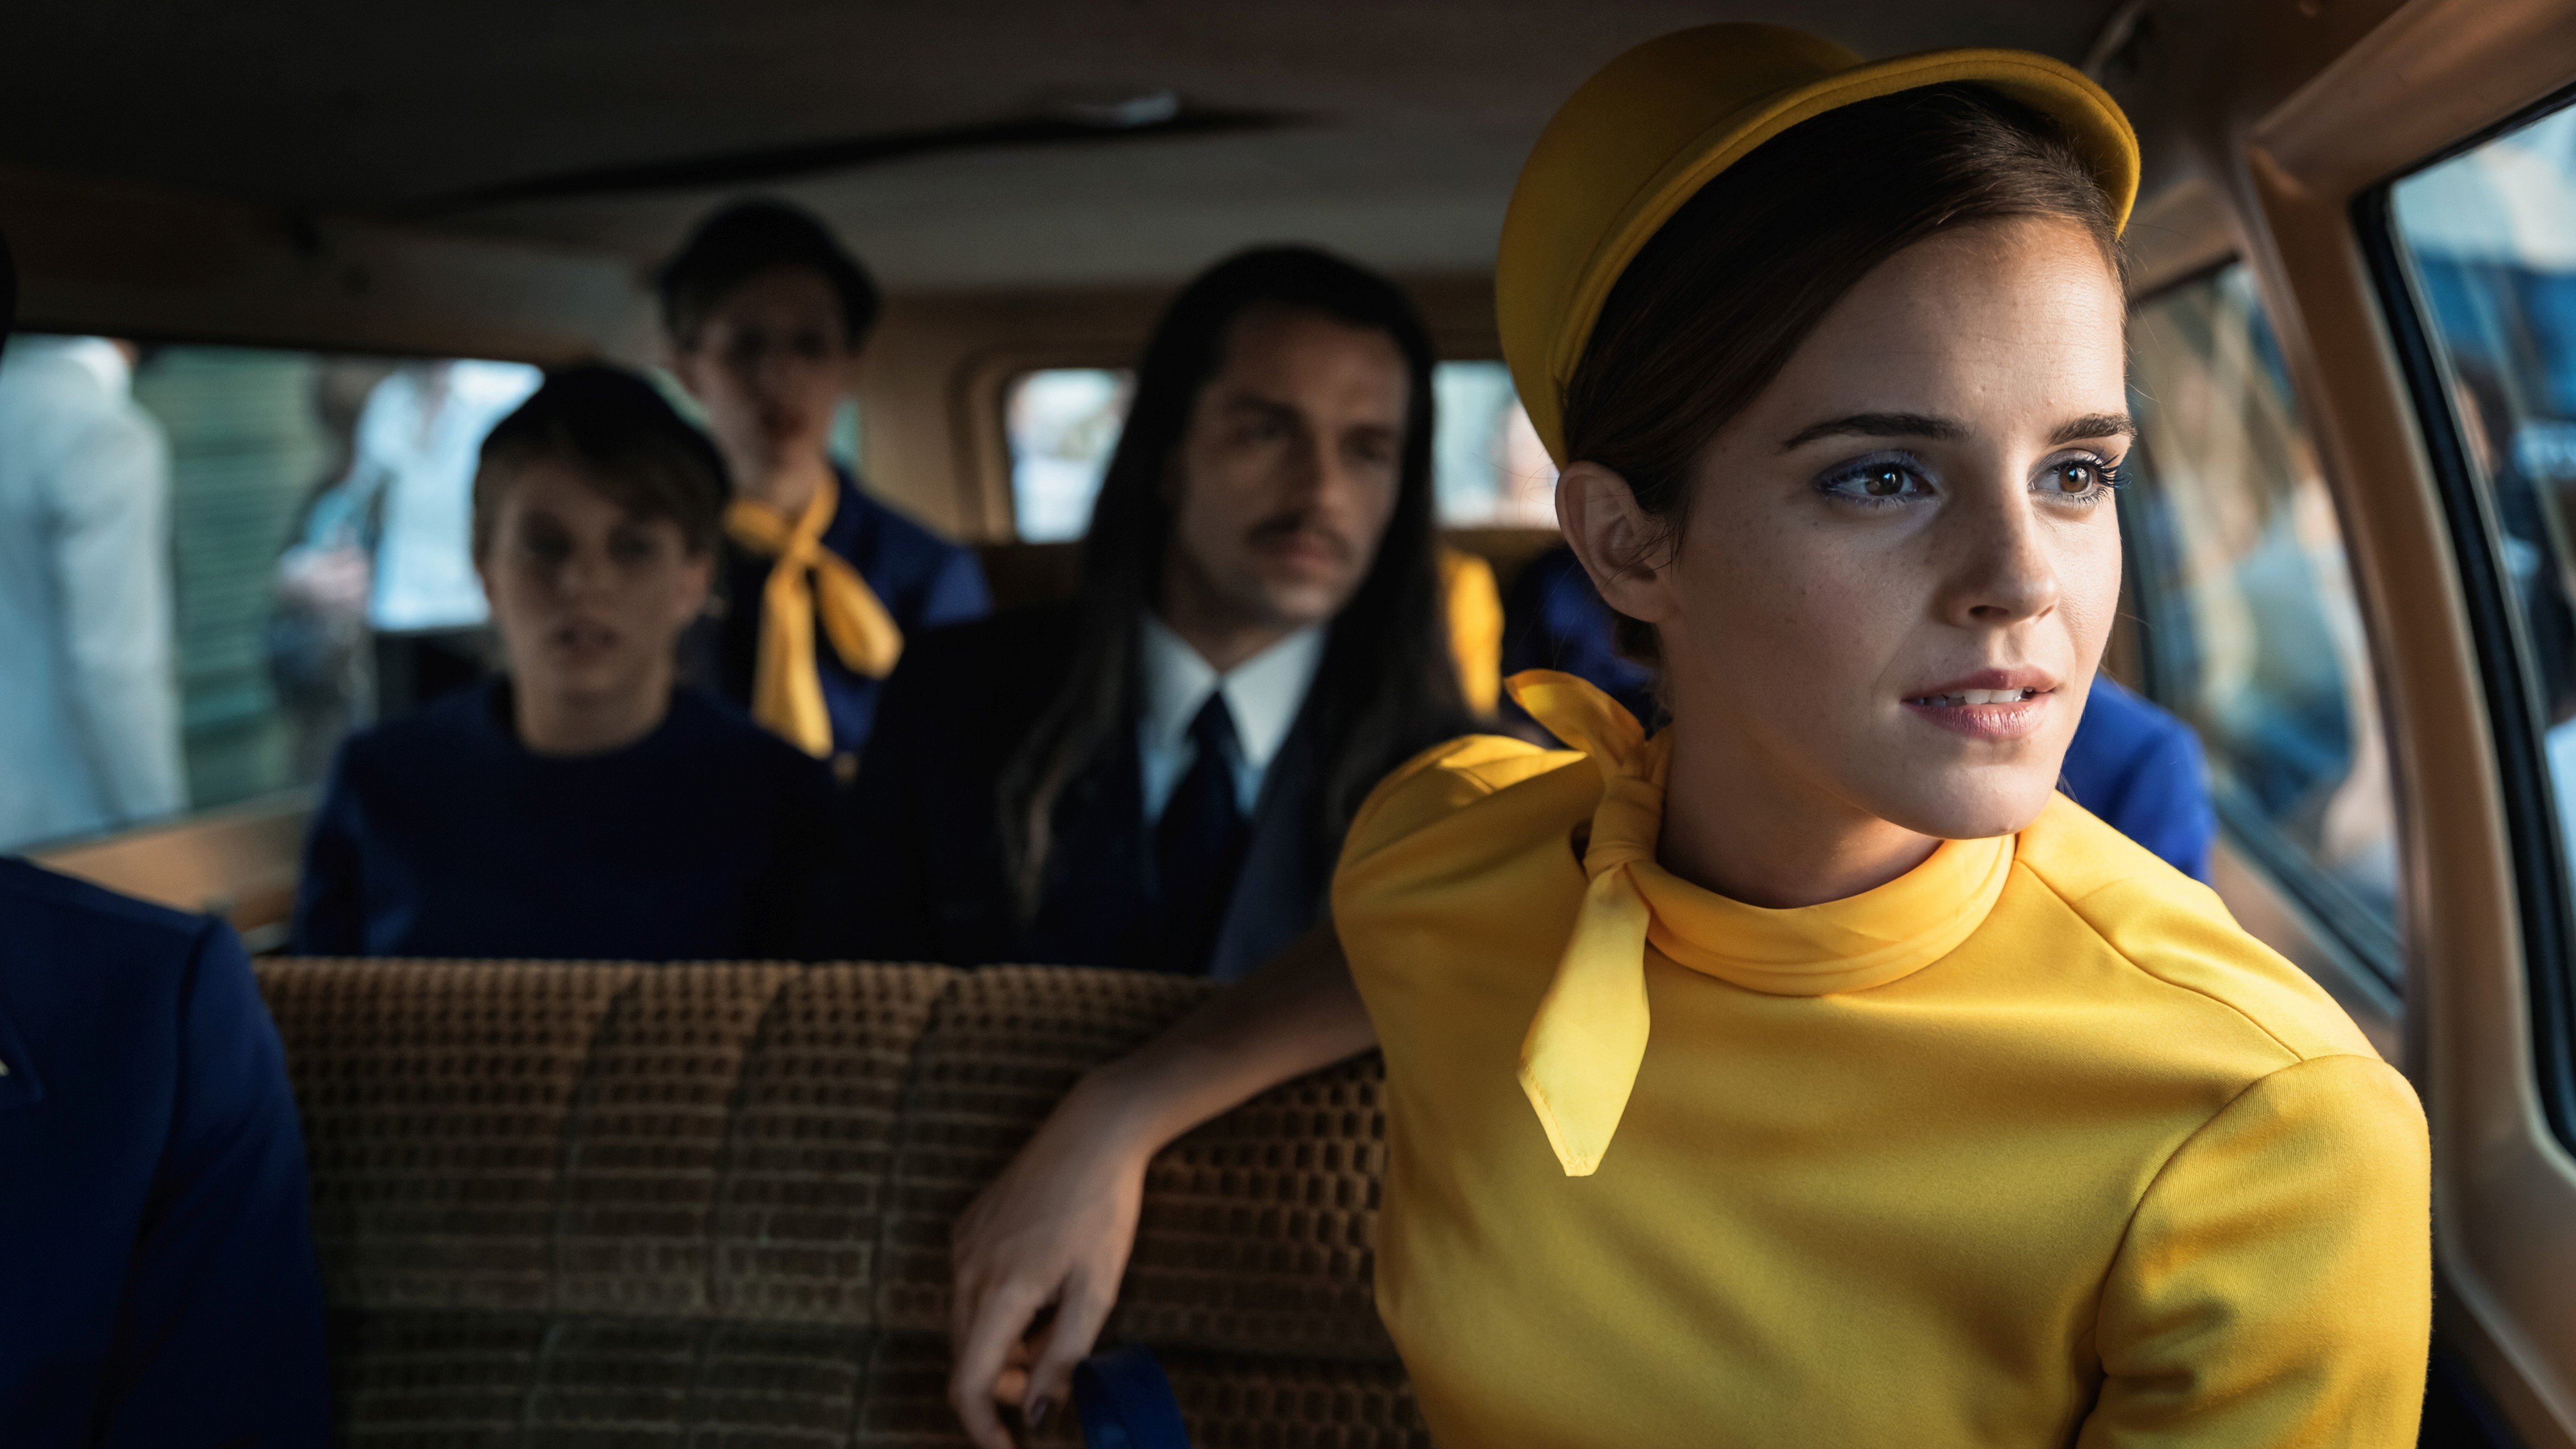 Fondos de pantalla Emma Watson en Película Colonia Dignidad